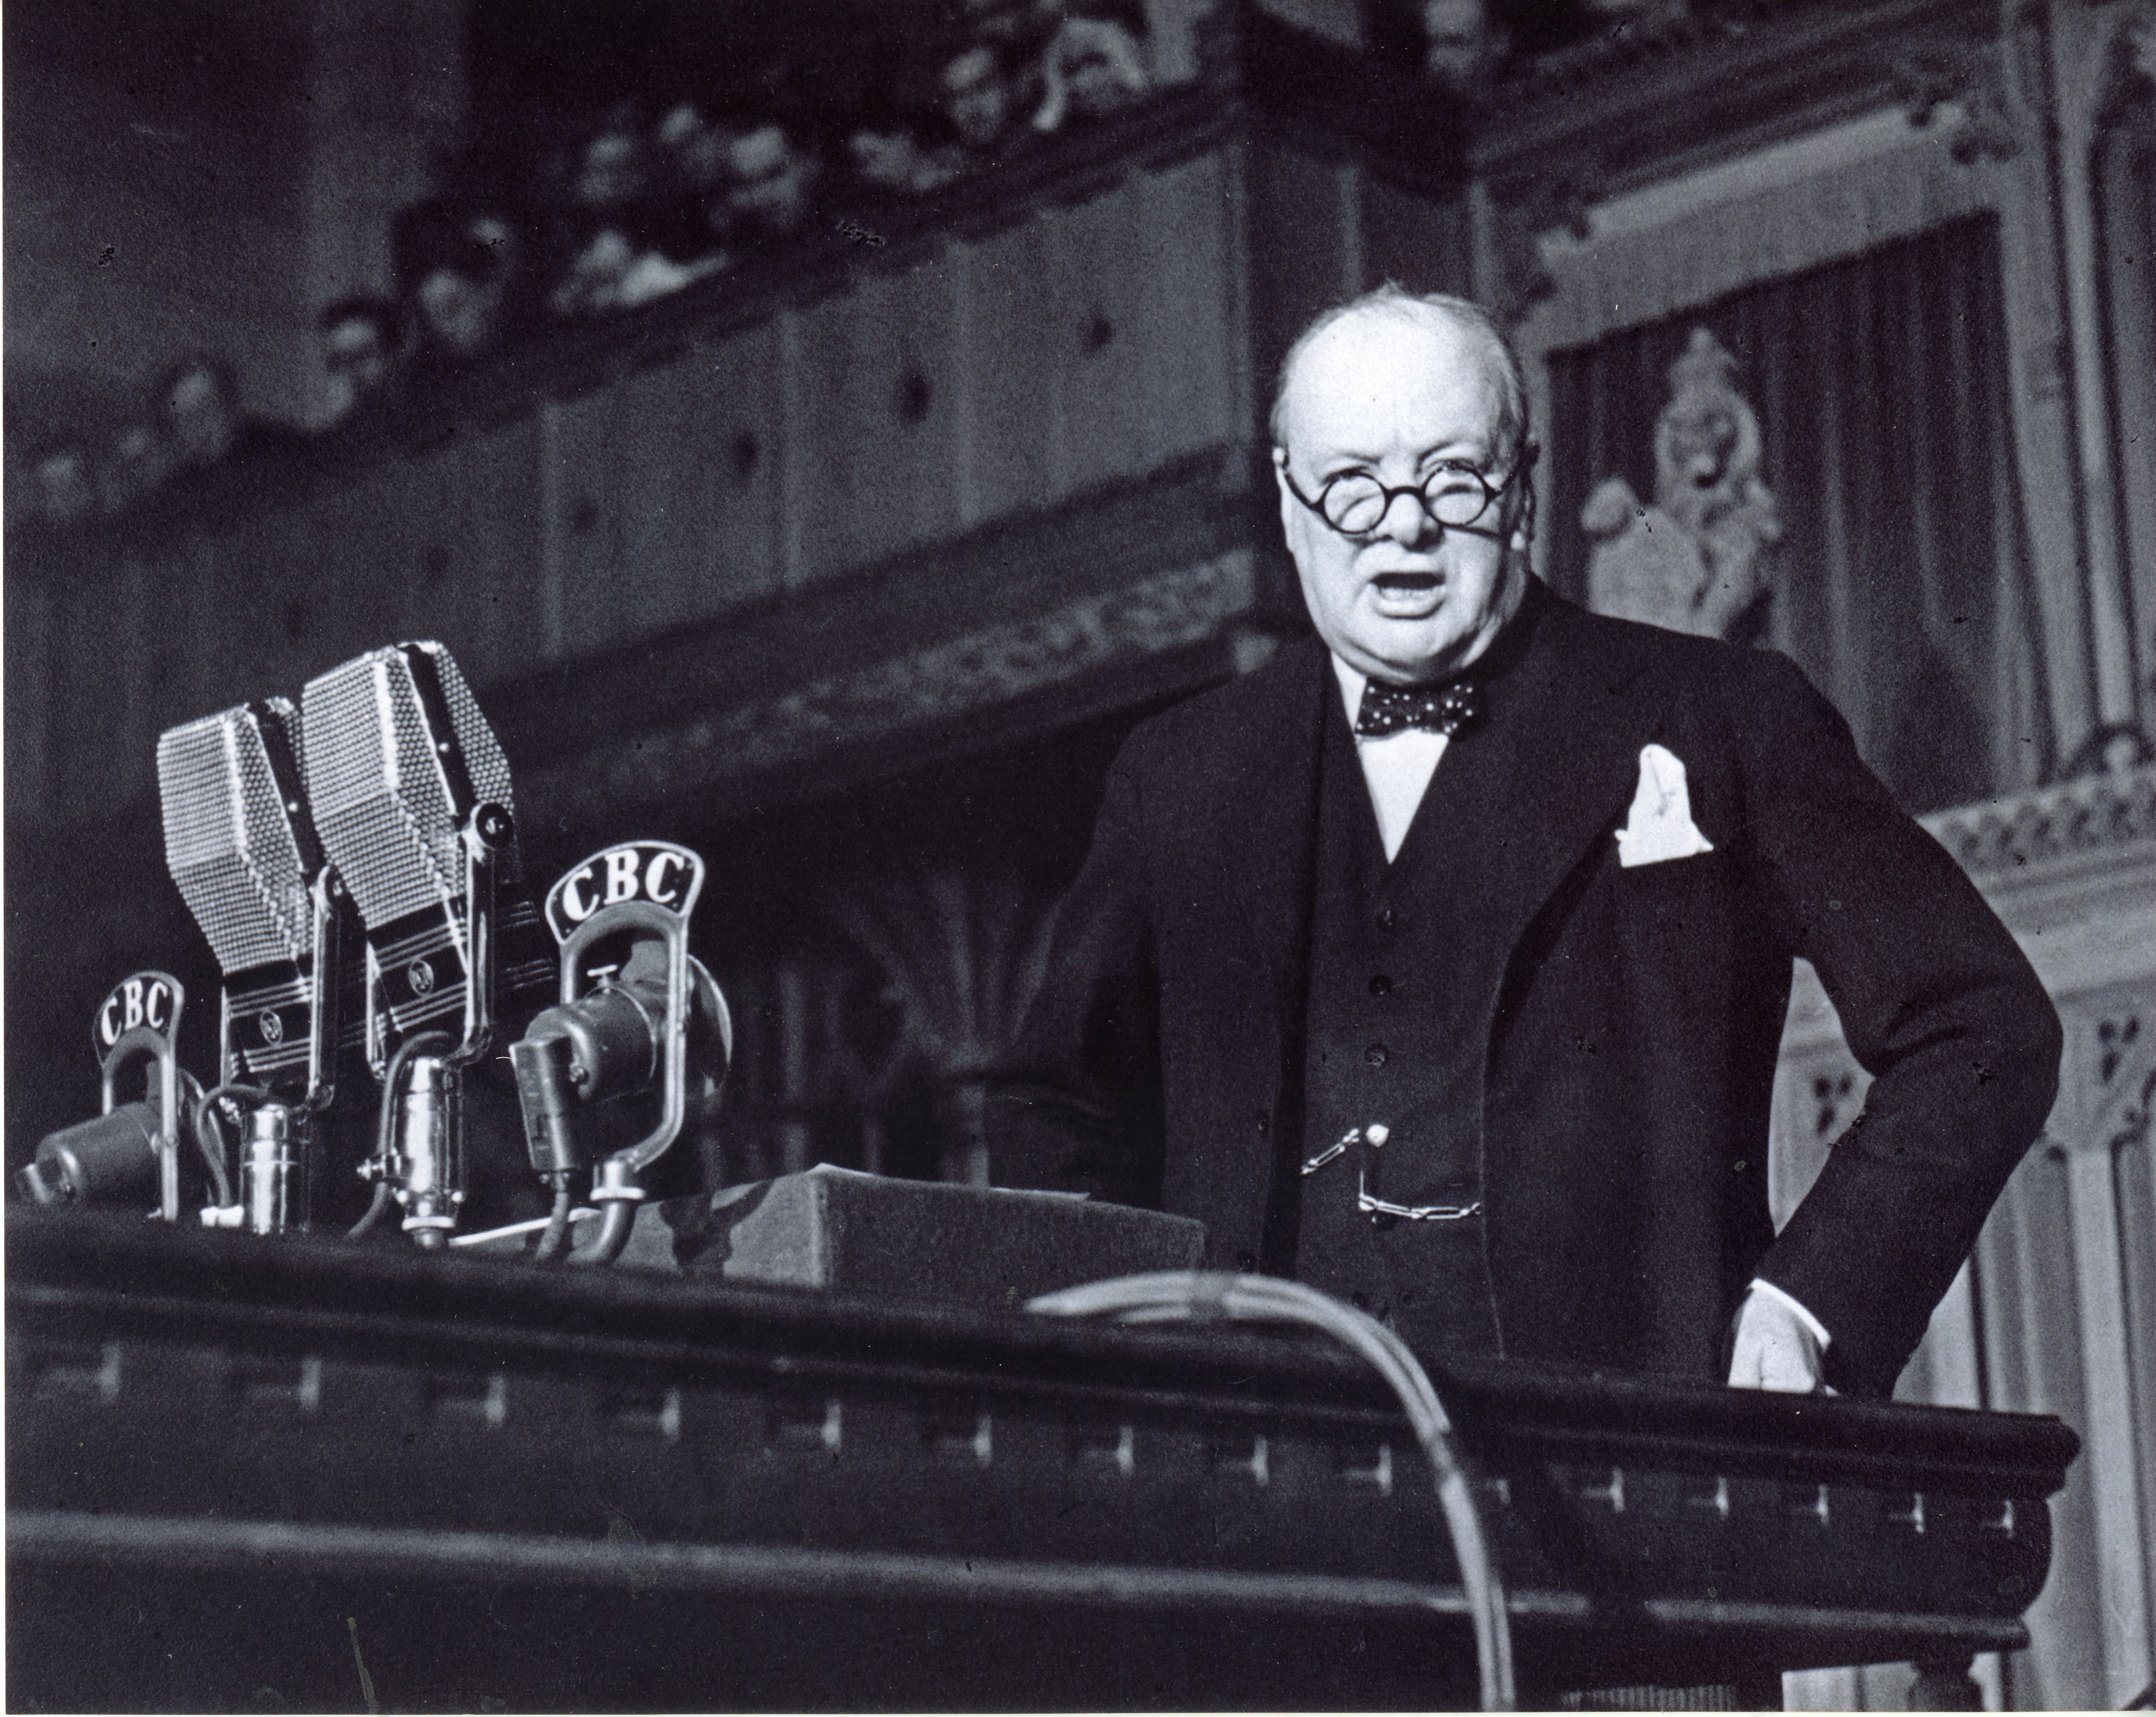 Rt. Hon. Winston Churchill adressing the House of Commons. Ottawa, Ont. 30 Dec. 1941